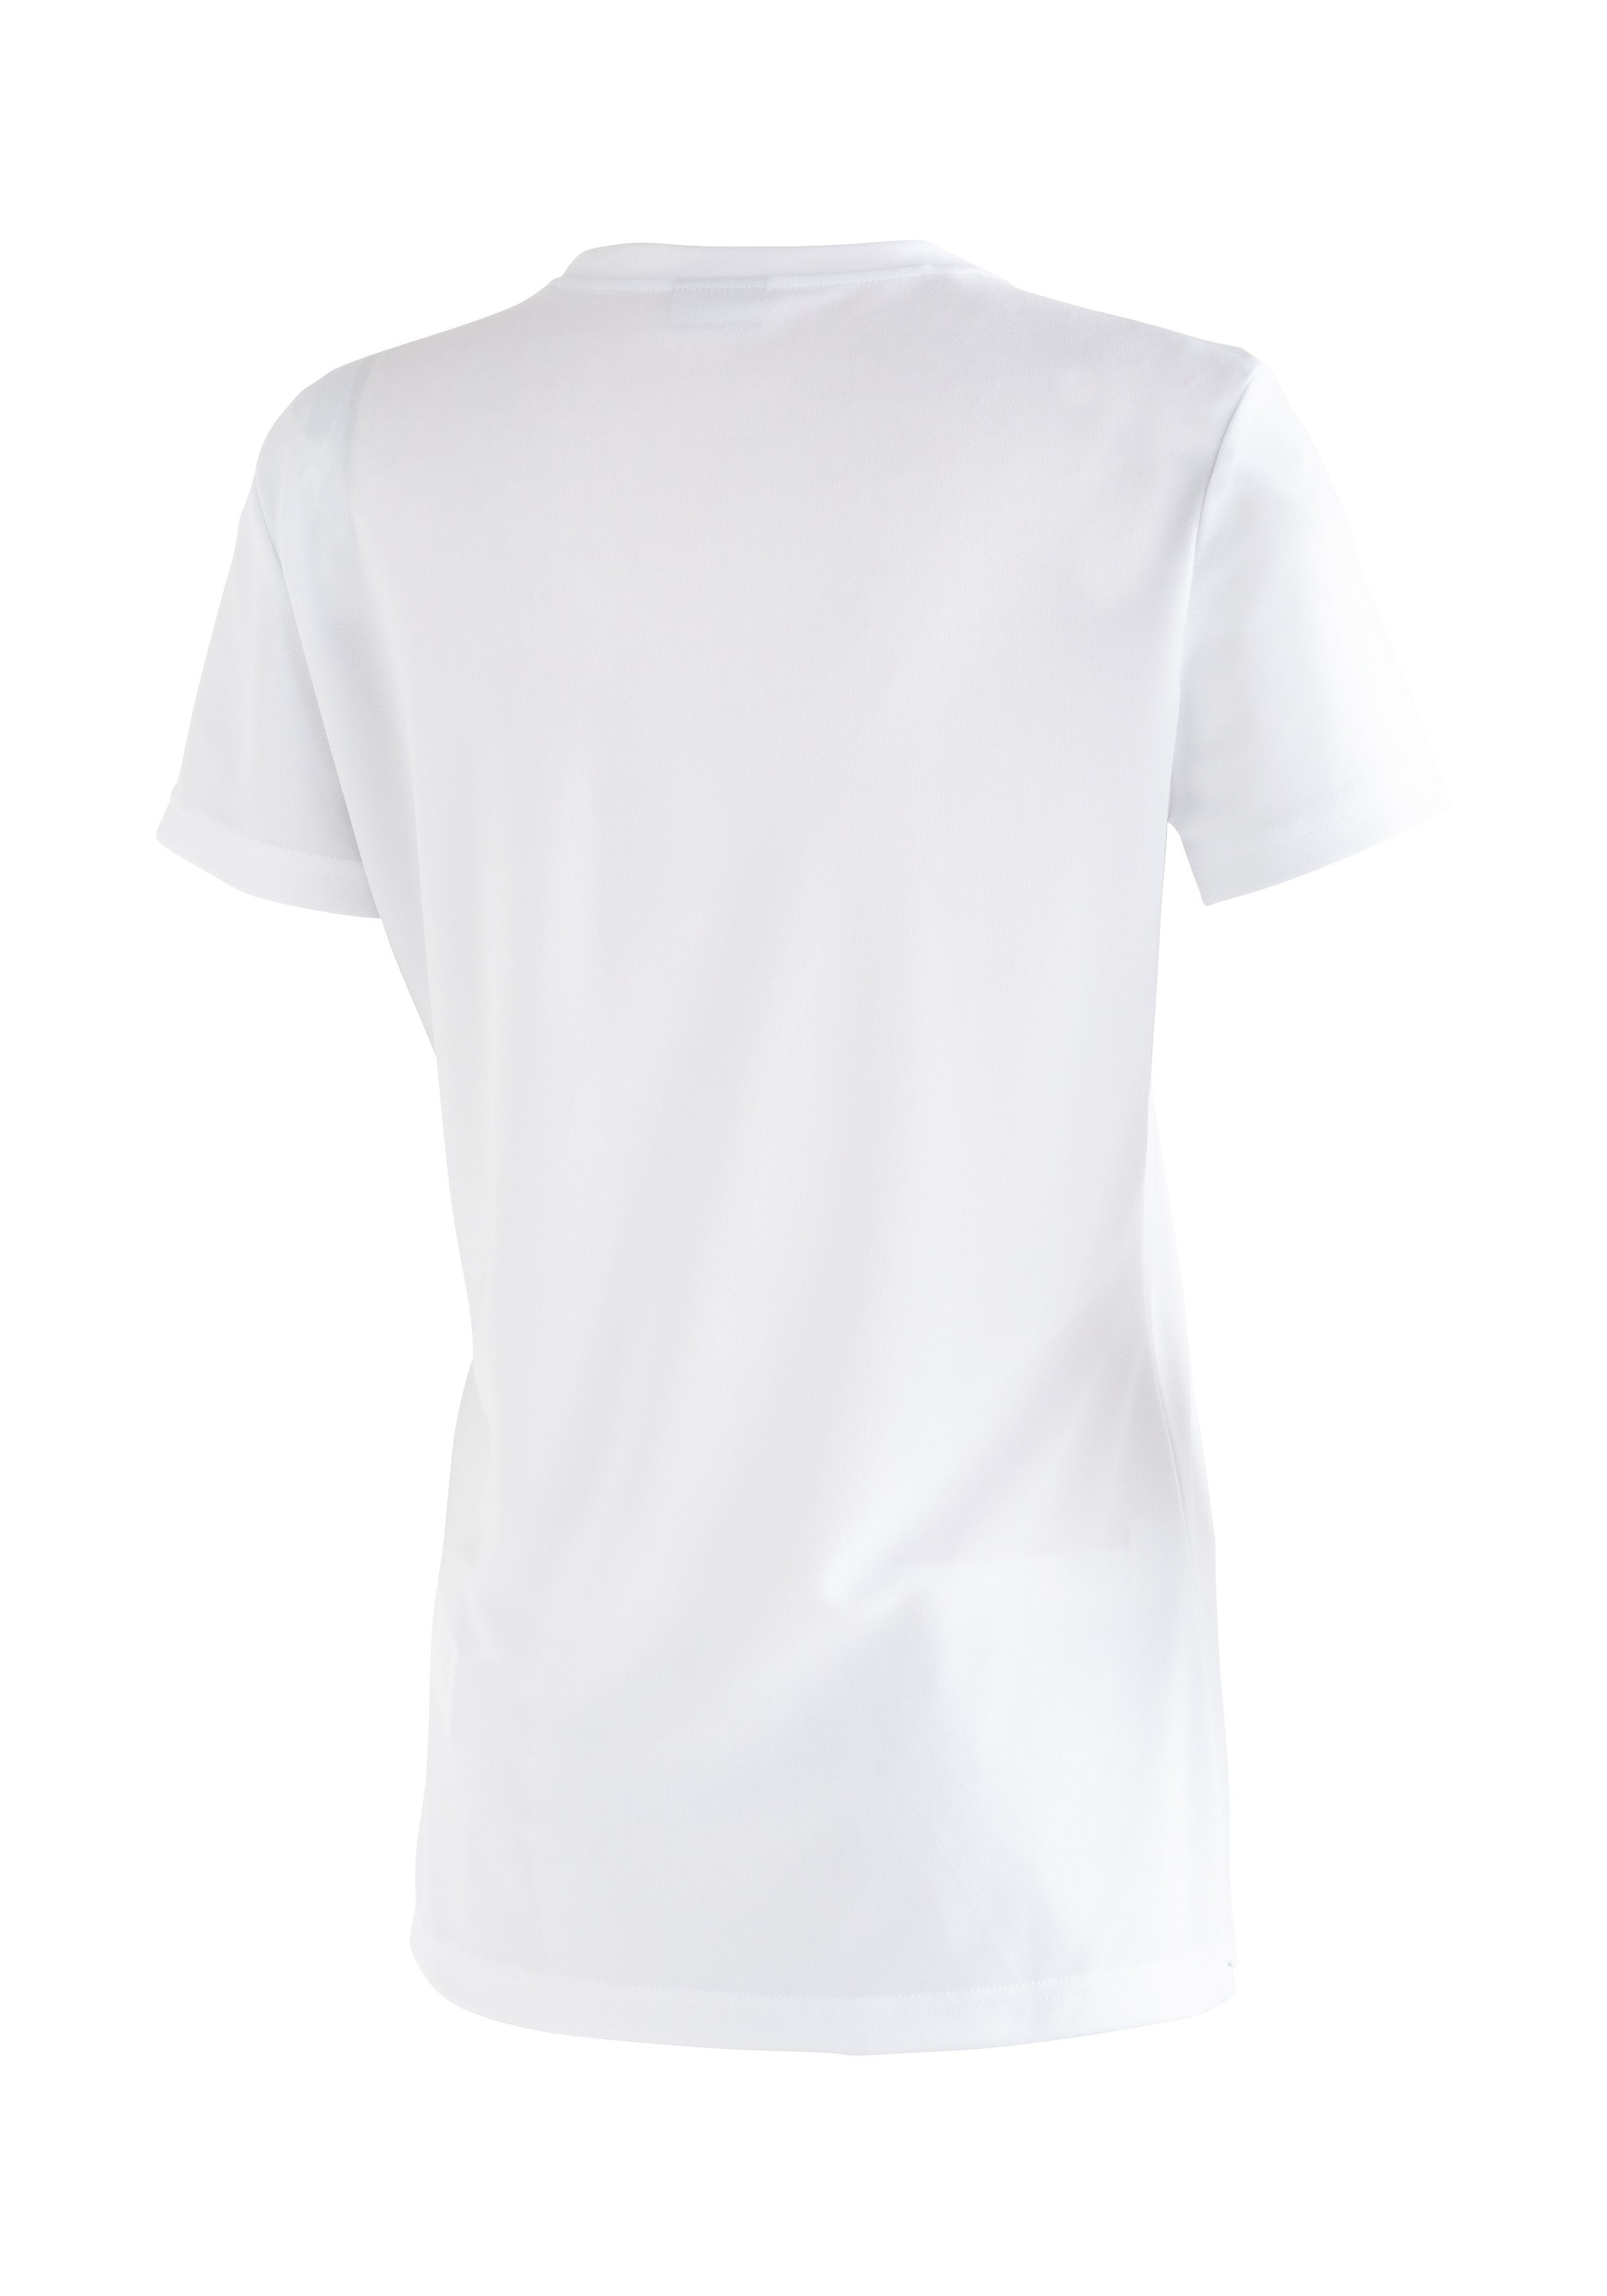 Funktionsshirt T-Shirt vielseitiges mit Freizeit Passformstabilität, und Wanderungen für Funktional Waltraut Maier Sports Funktional hoher Print vielseitiges T-Shirt